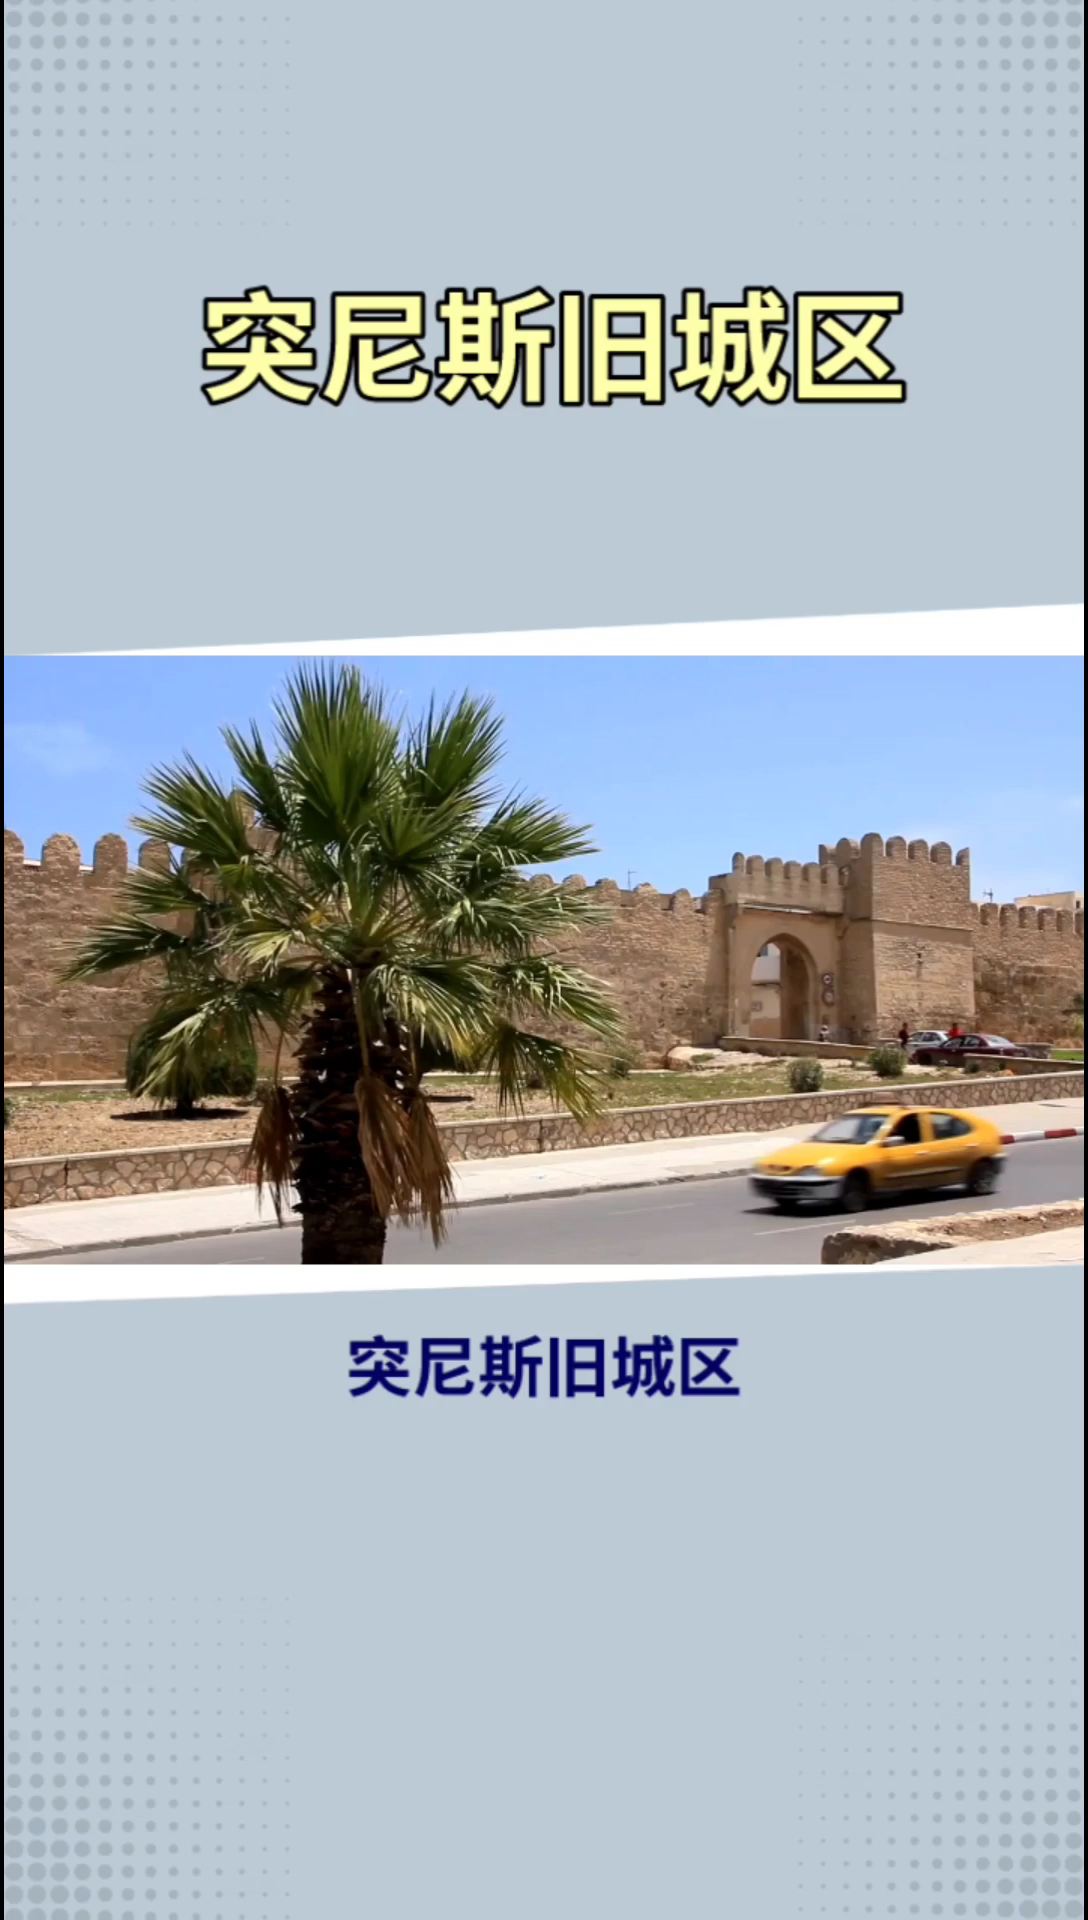 突尼斯旧城区：1300年历史的北非伊斯兰城市